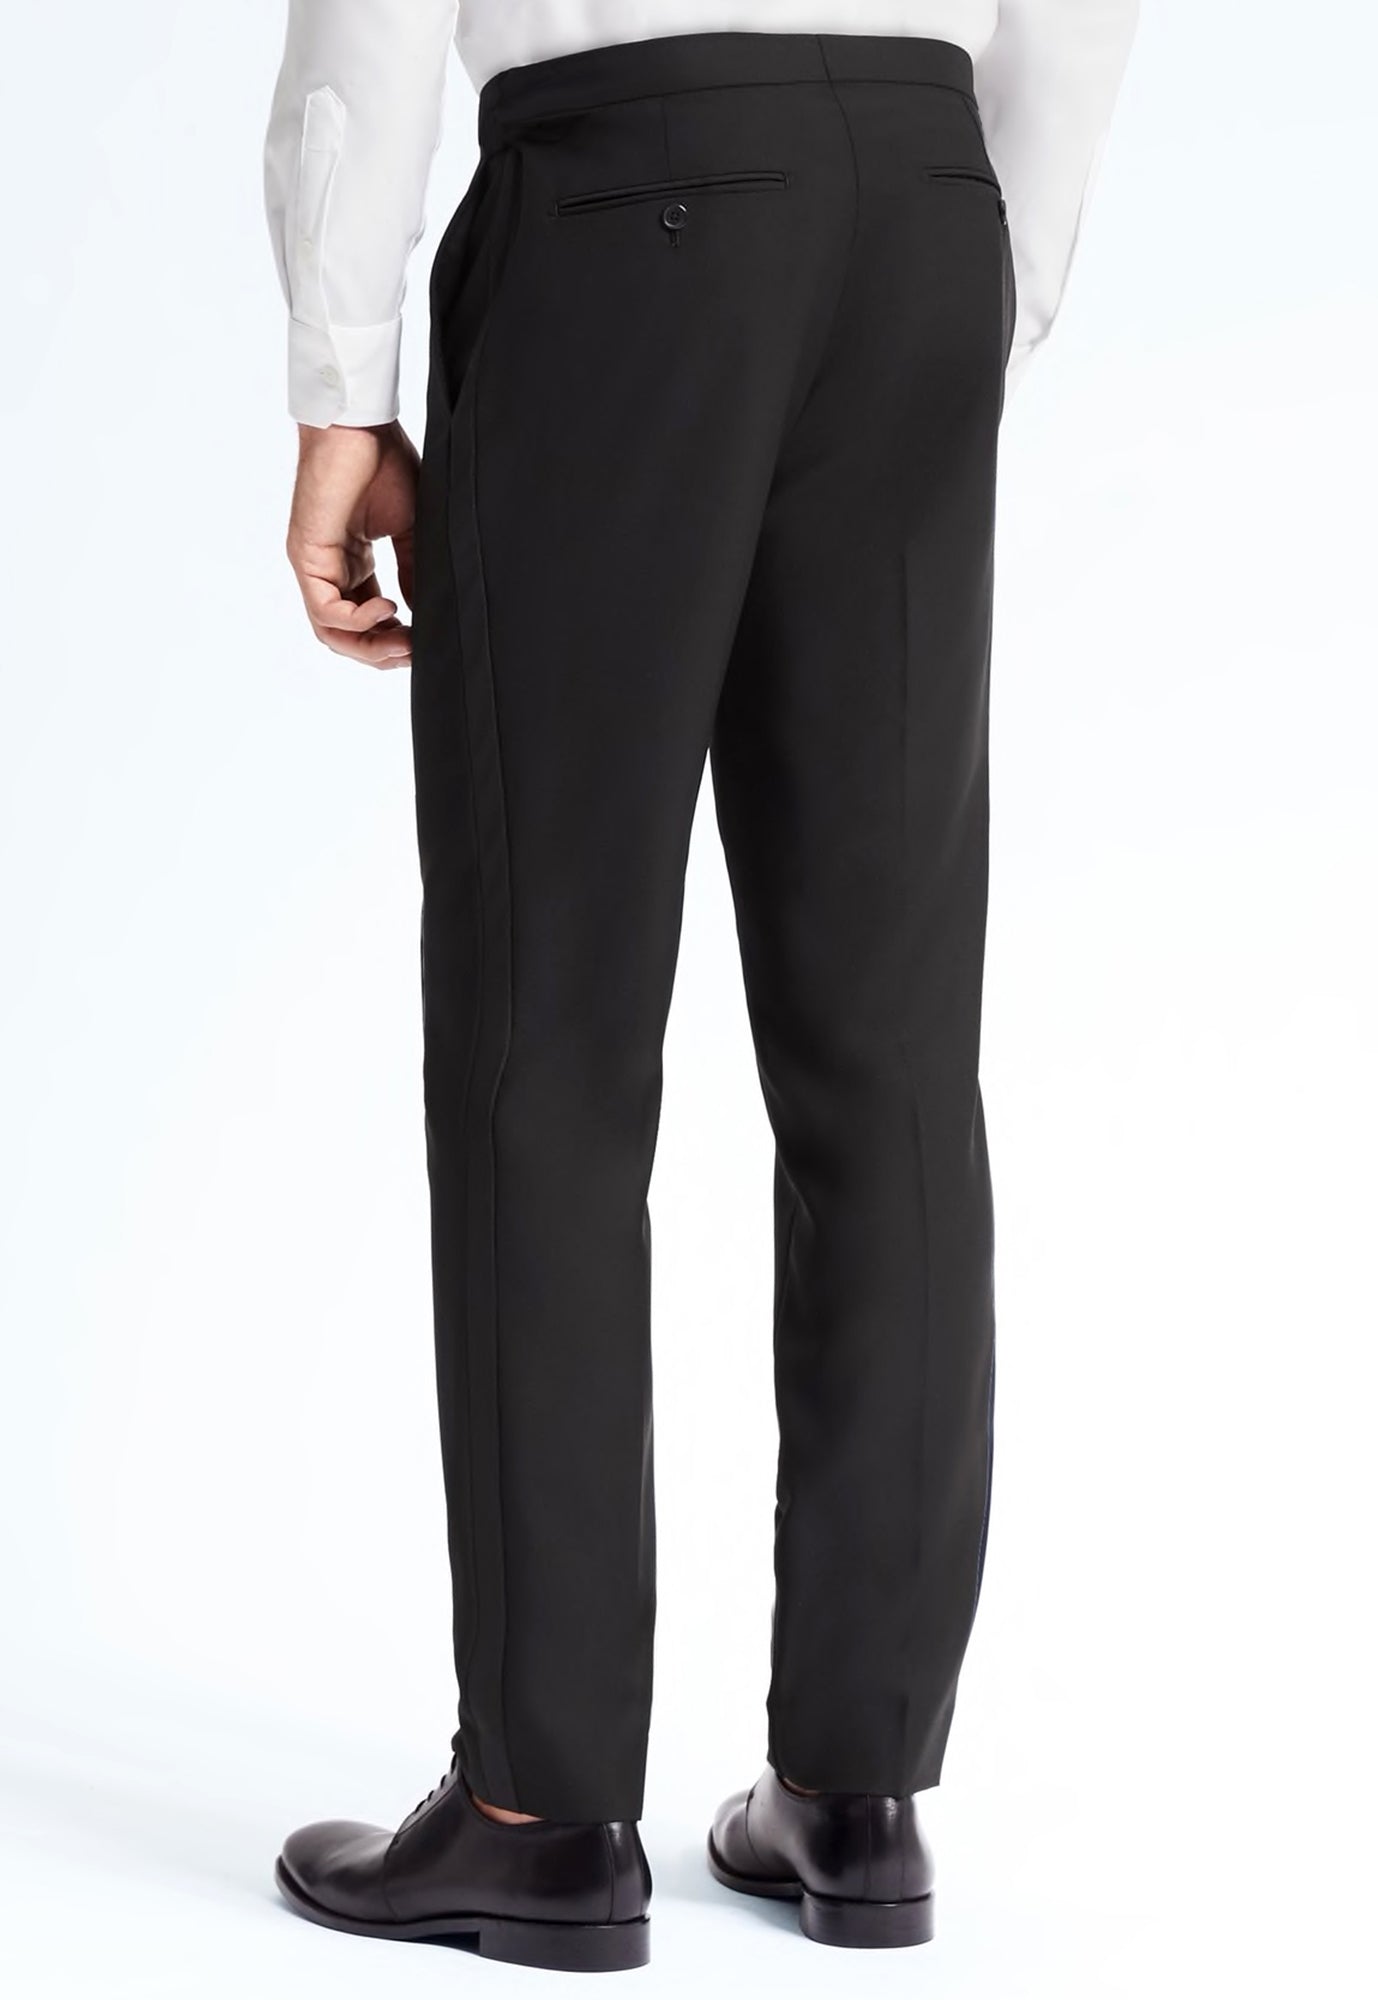 Men's Retro Vintage Black Tuxedo Pants Satin Stripe Tapered Leg 30-32 Long  Rise